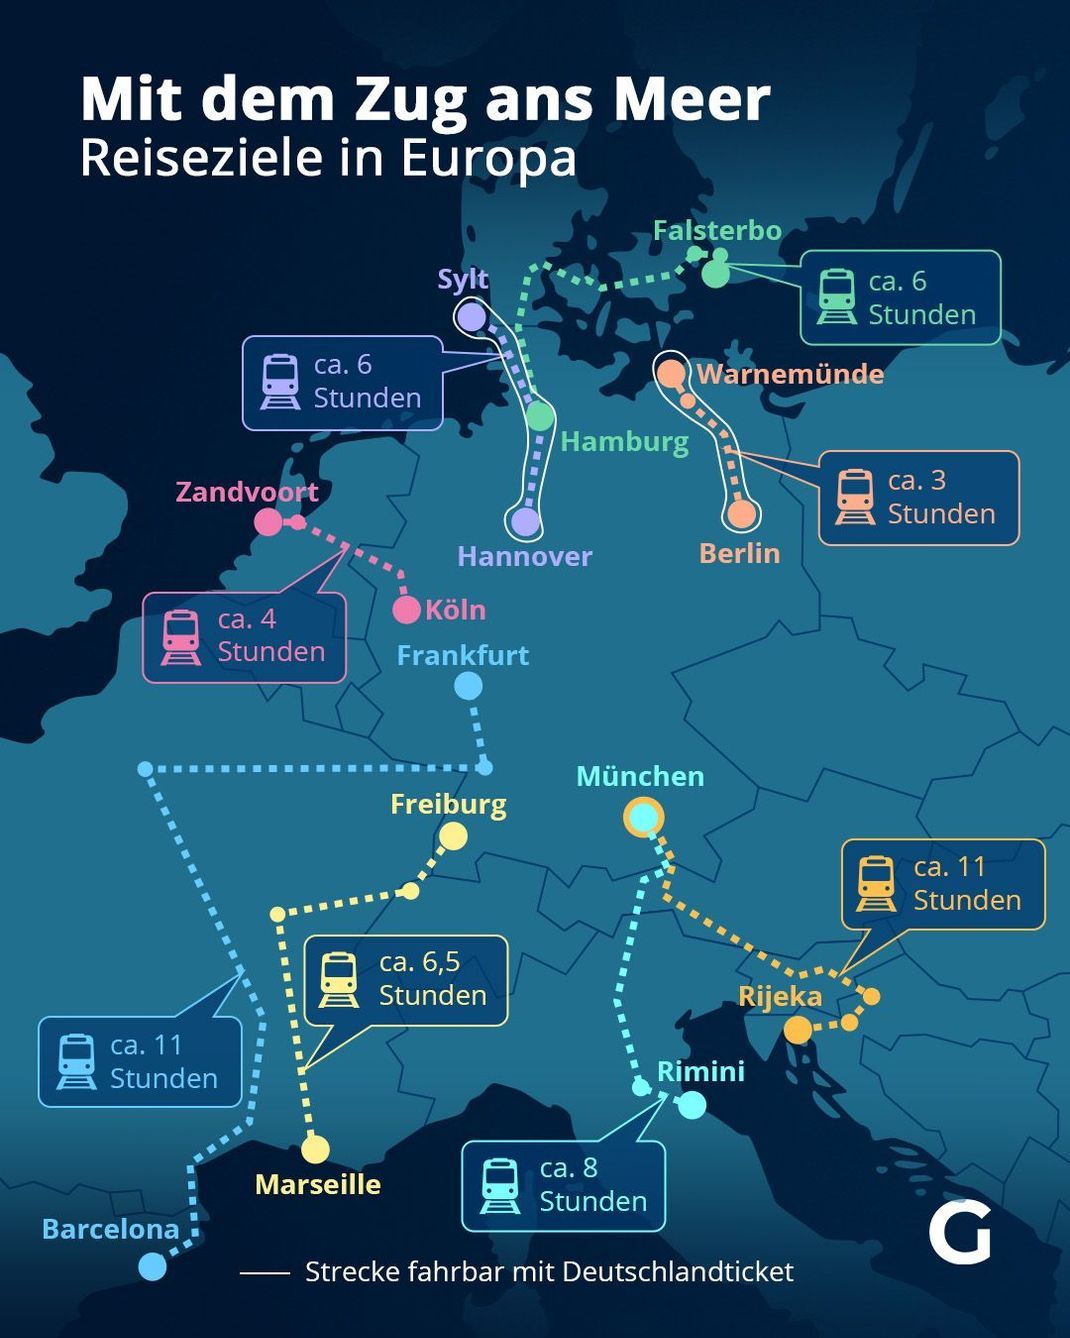 Mit dem Zug ans Meer - Reiseziele in Europa